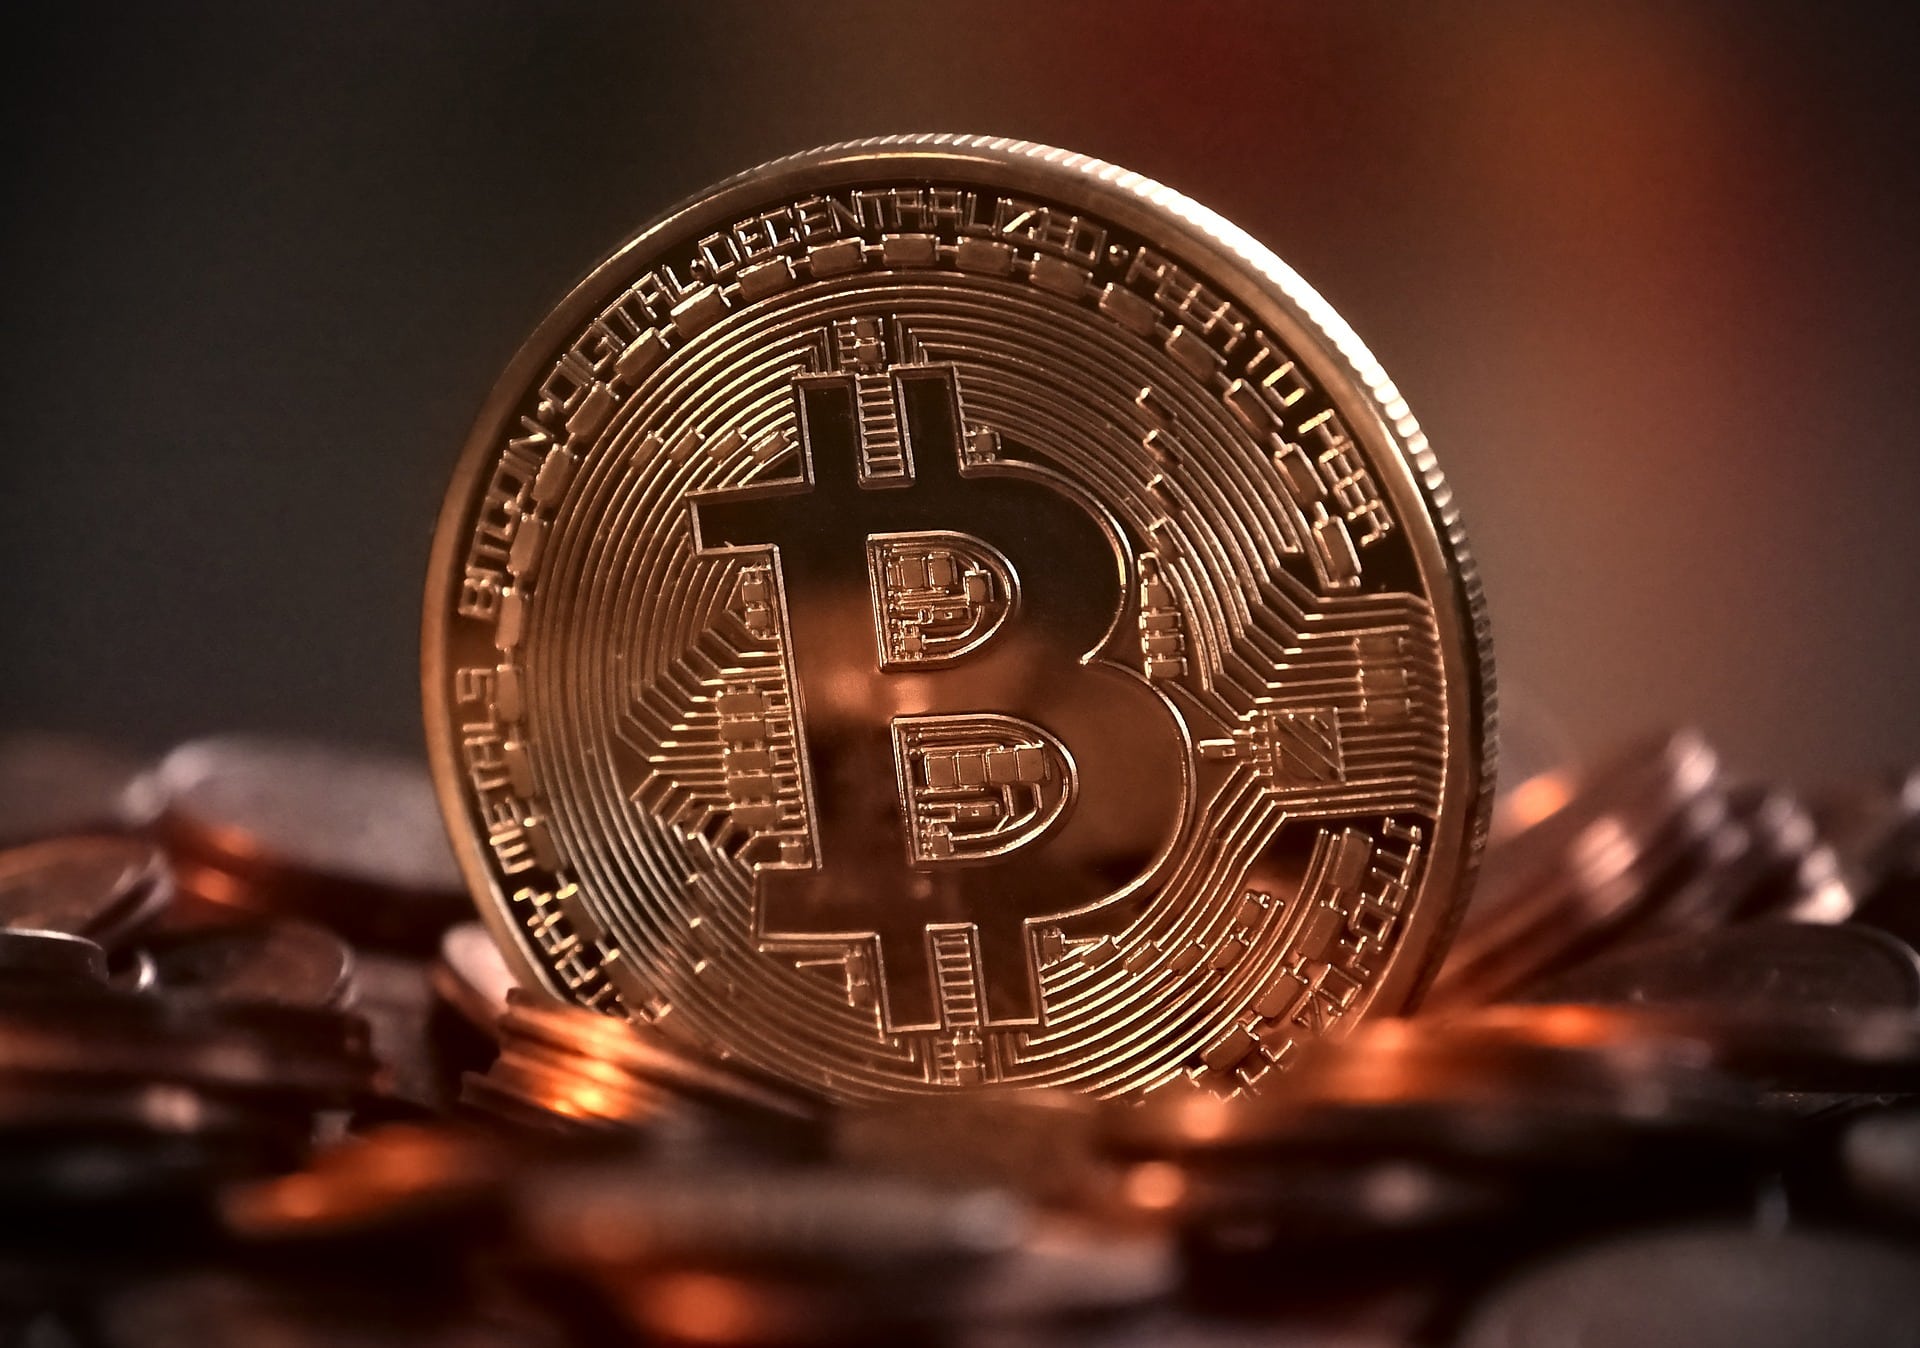 A Bitcoin coin.